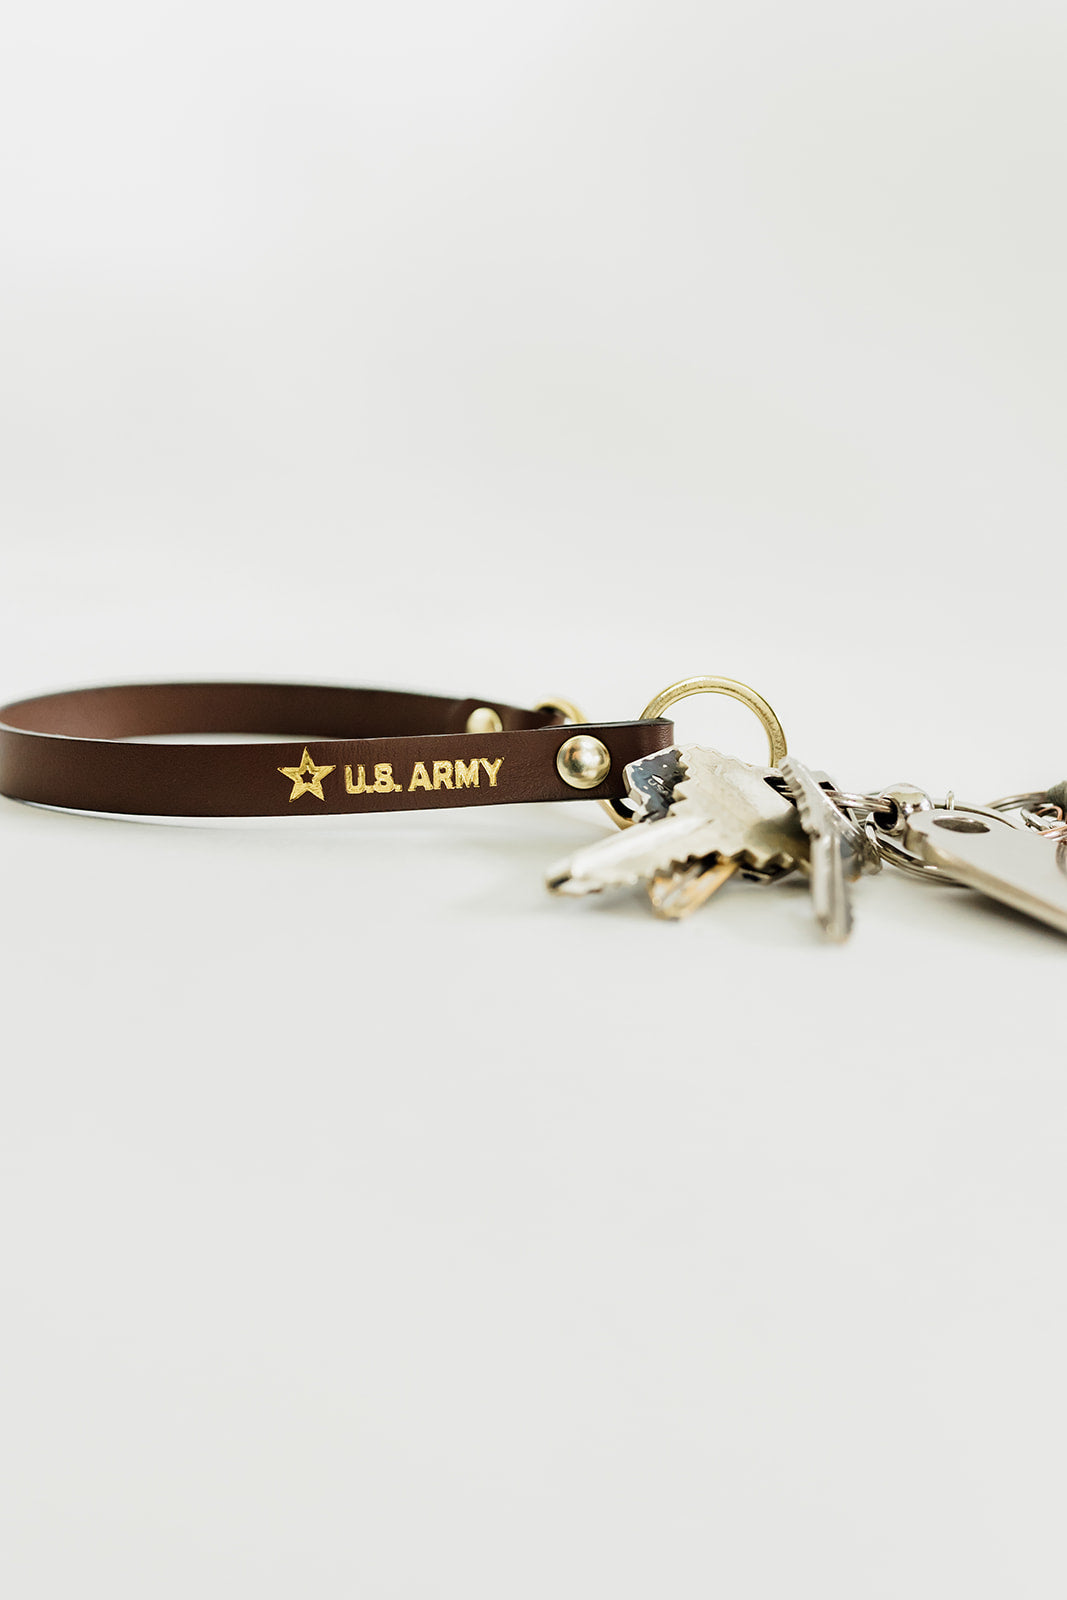 1943 Key Leash | U.S. ARMY Brown Leather